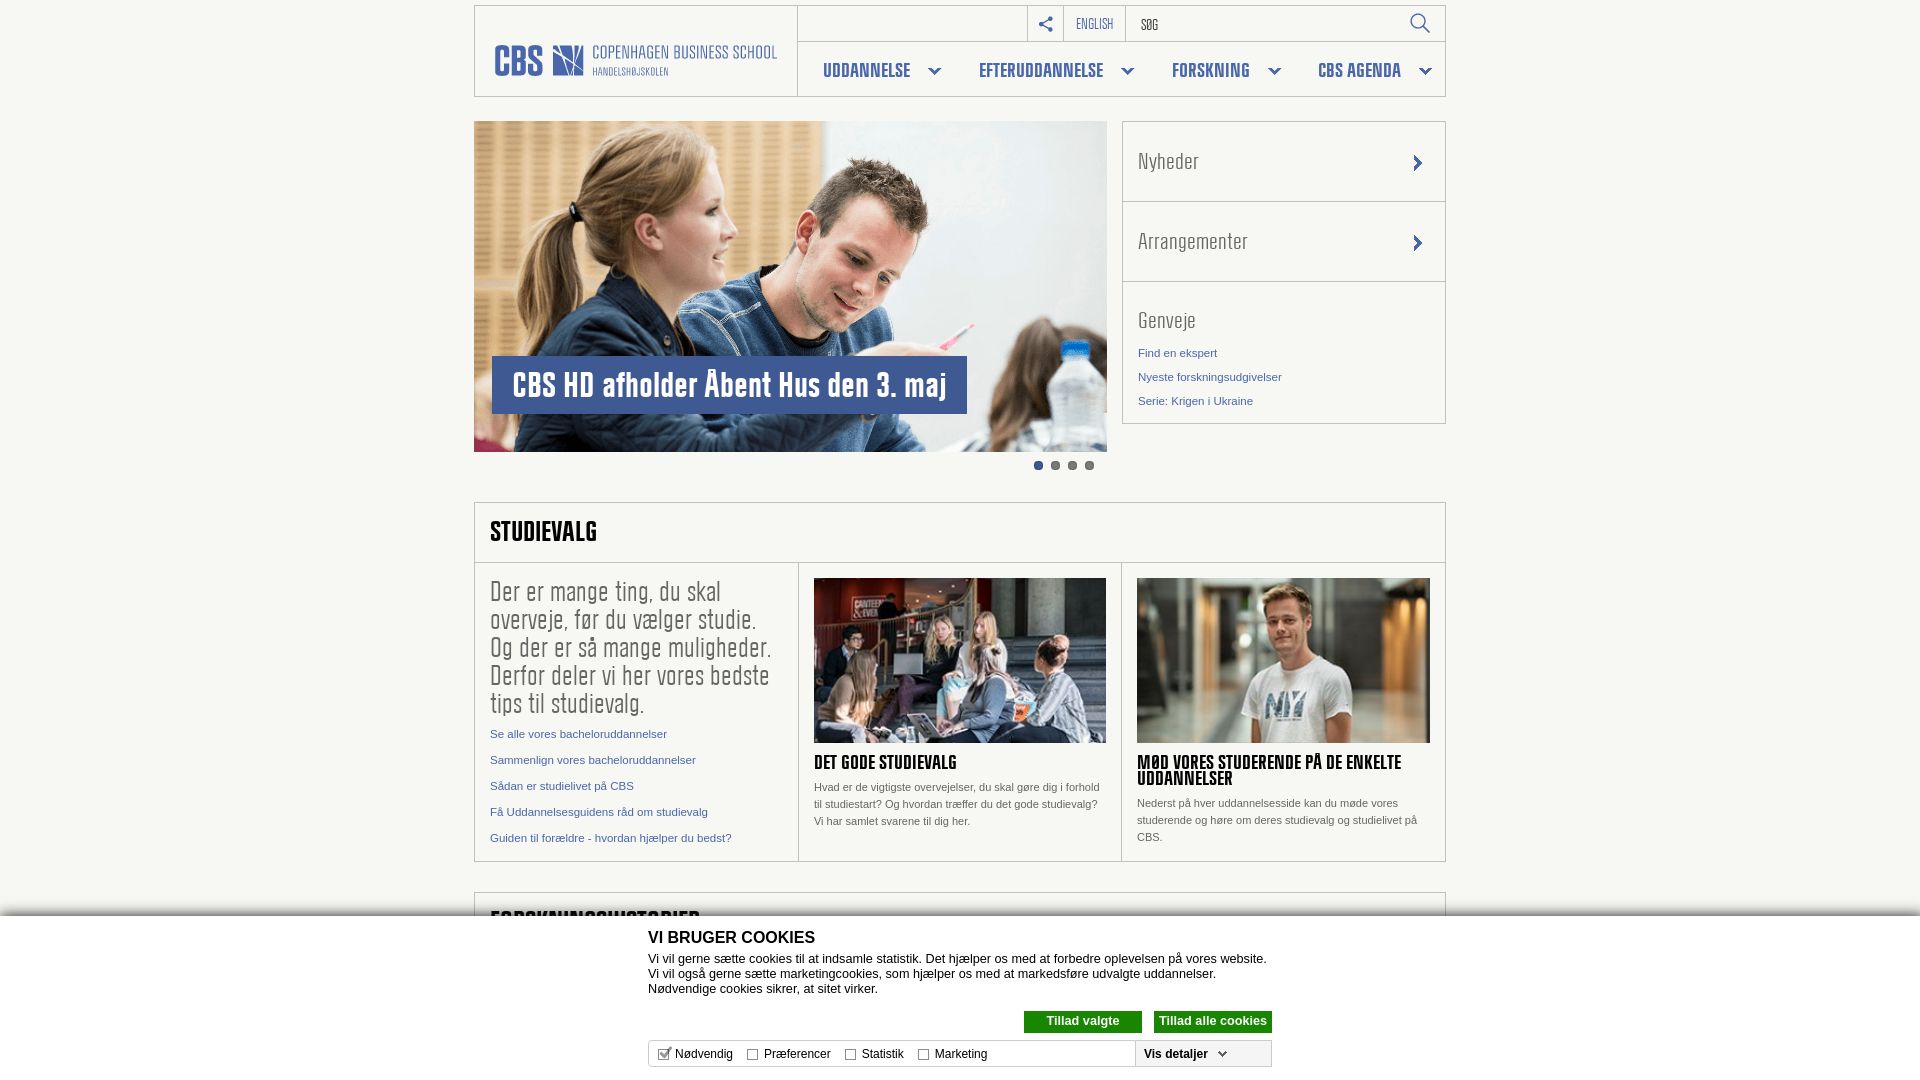 État du site web cbs.dk est   EN LIGNE